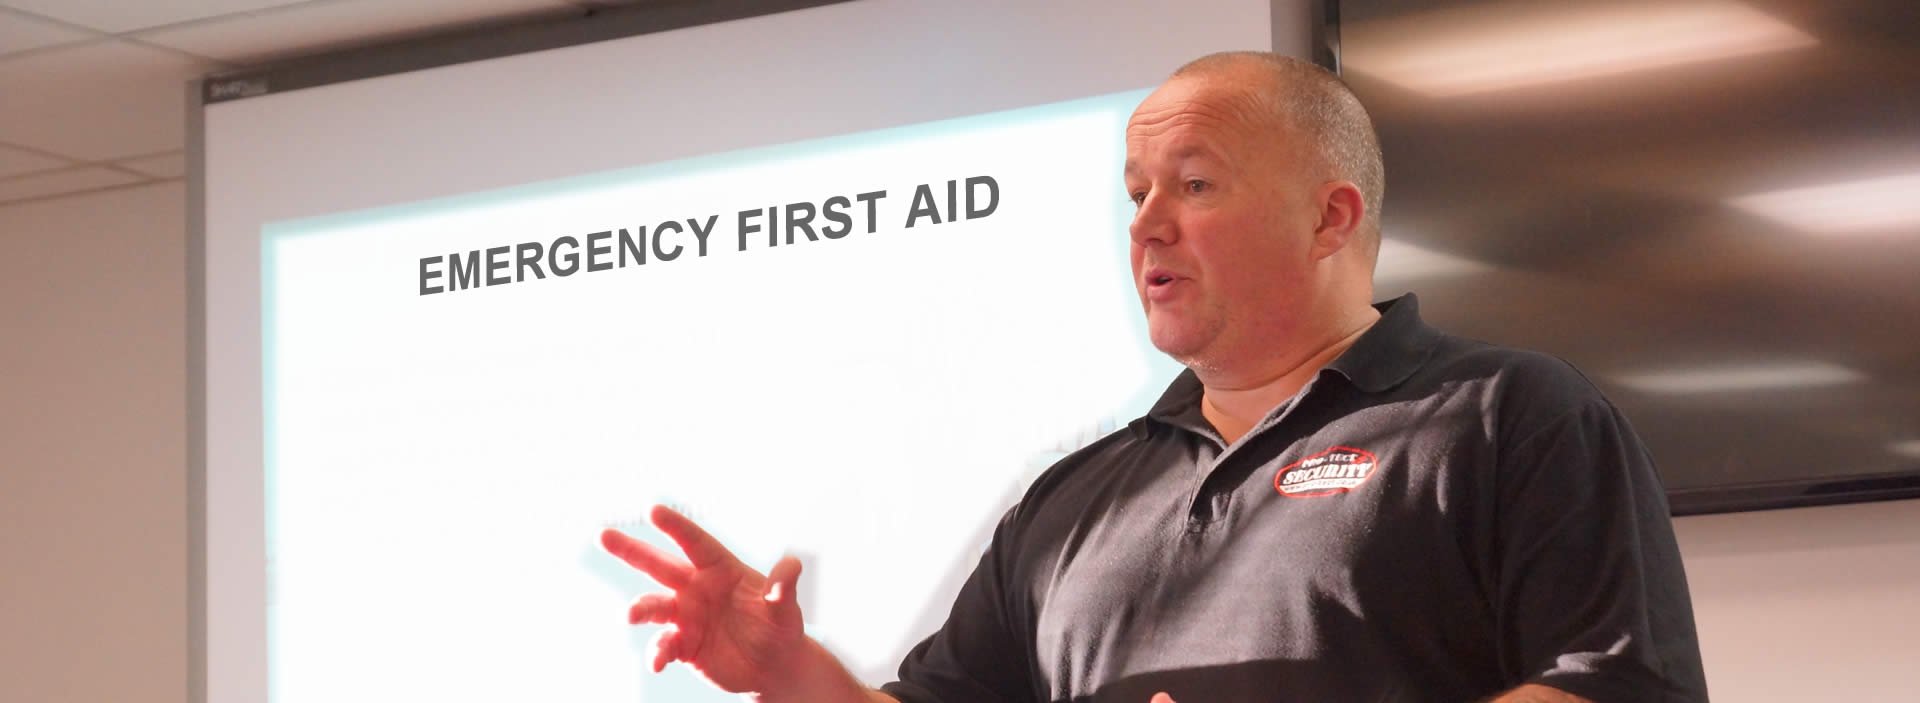 Emergency First Aid Training